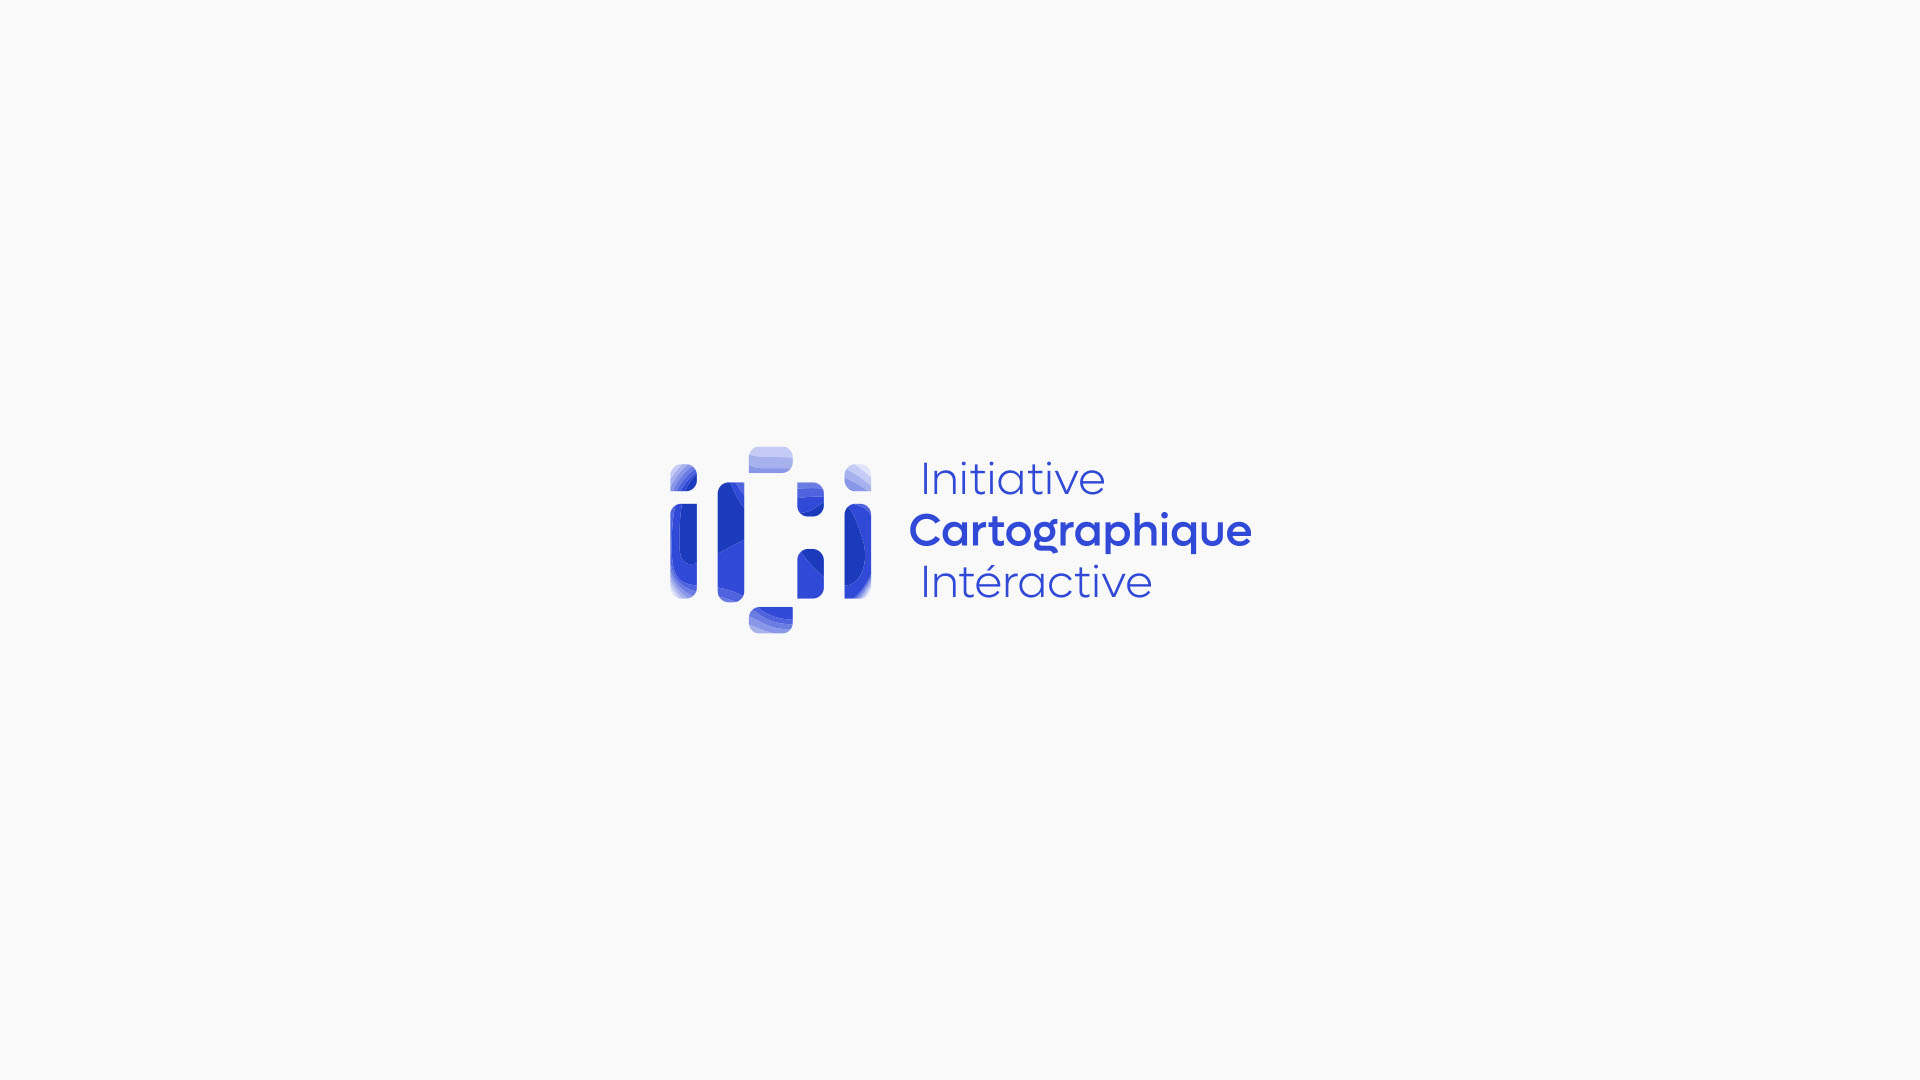 Identité graphique logo du projet ICI Initiative Cartographique Interactive